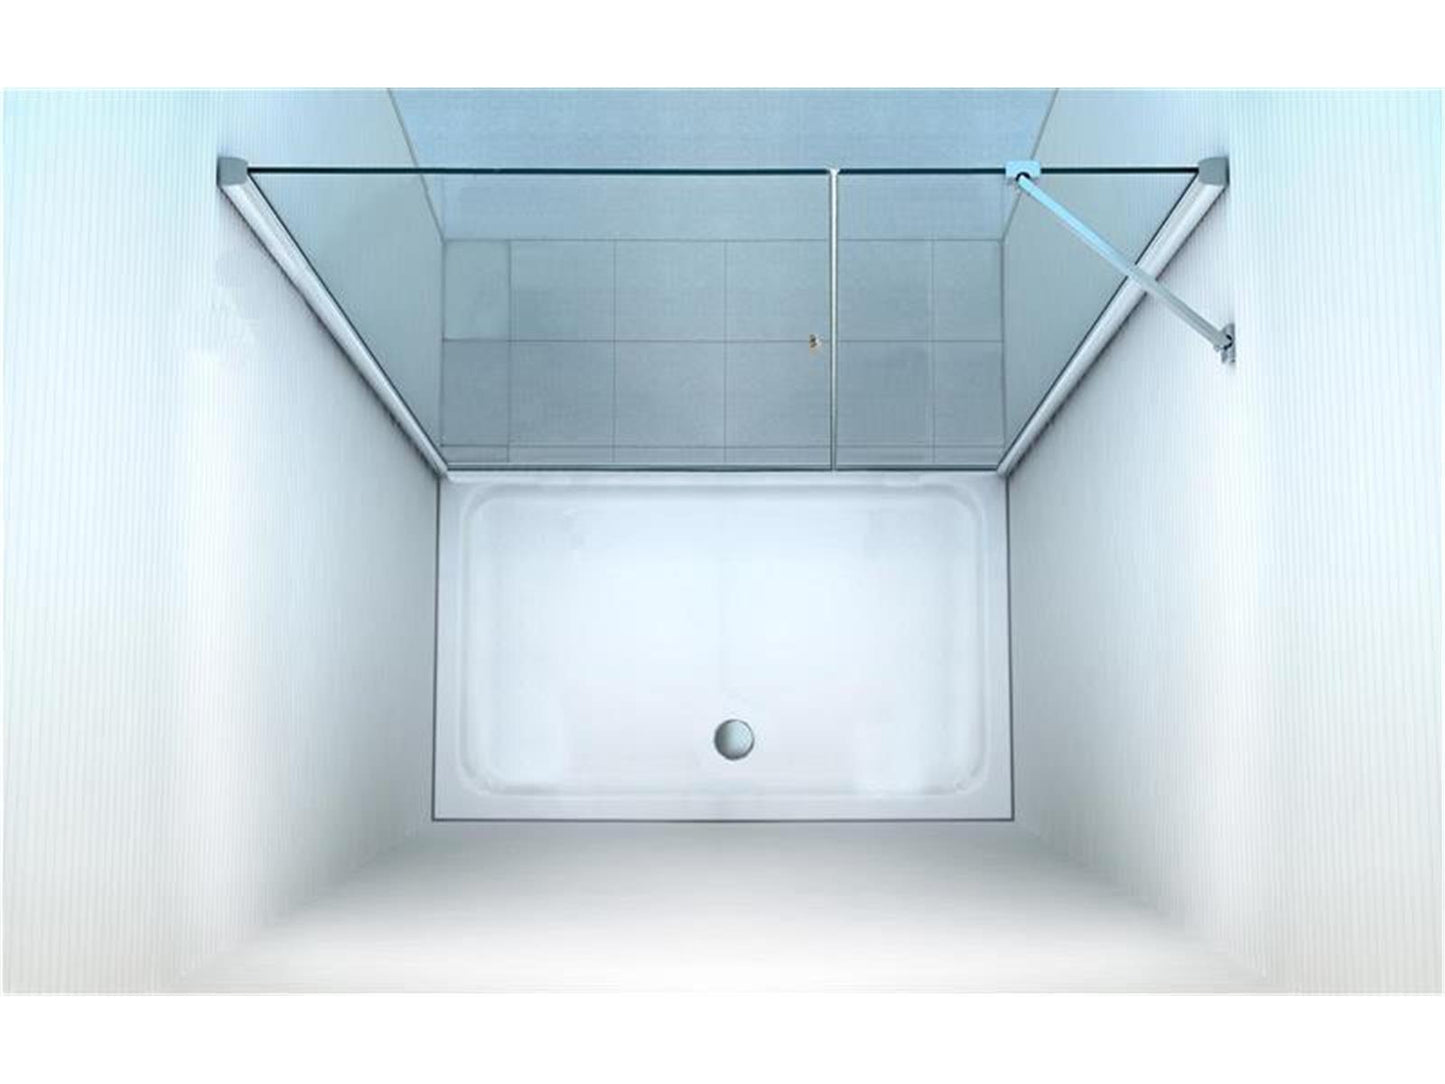 GlasHomeCenter - Cabina nicho Florida (175 x 195 cm) - Vidrio de seguridad templado de 8 mm - sin plato de ducha